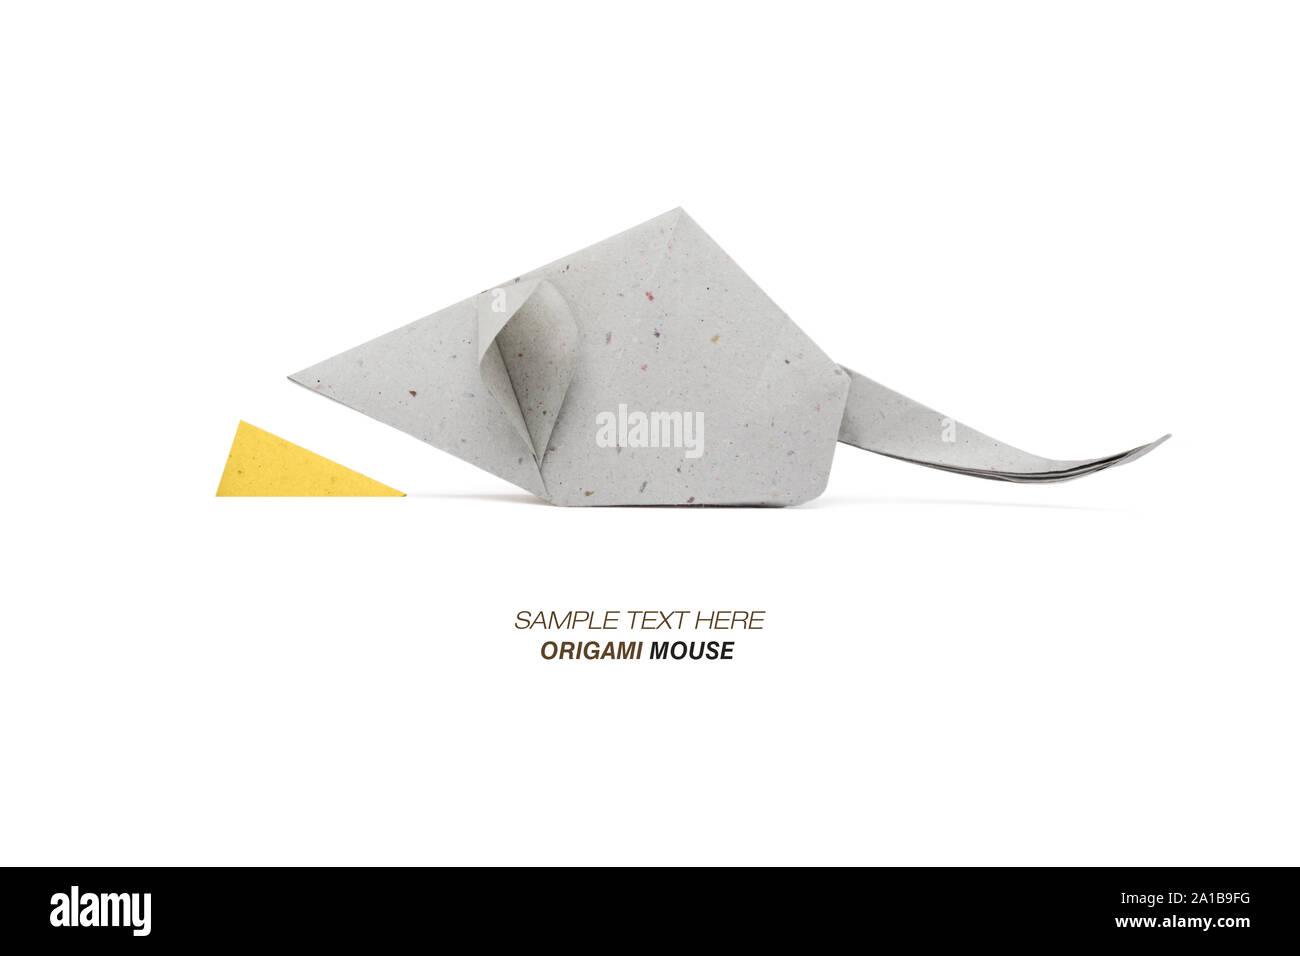 Origami Di Topo Immagini e Fotos Stock - Alamy